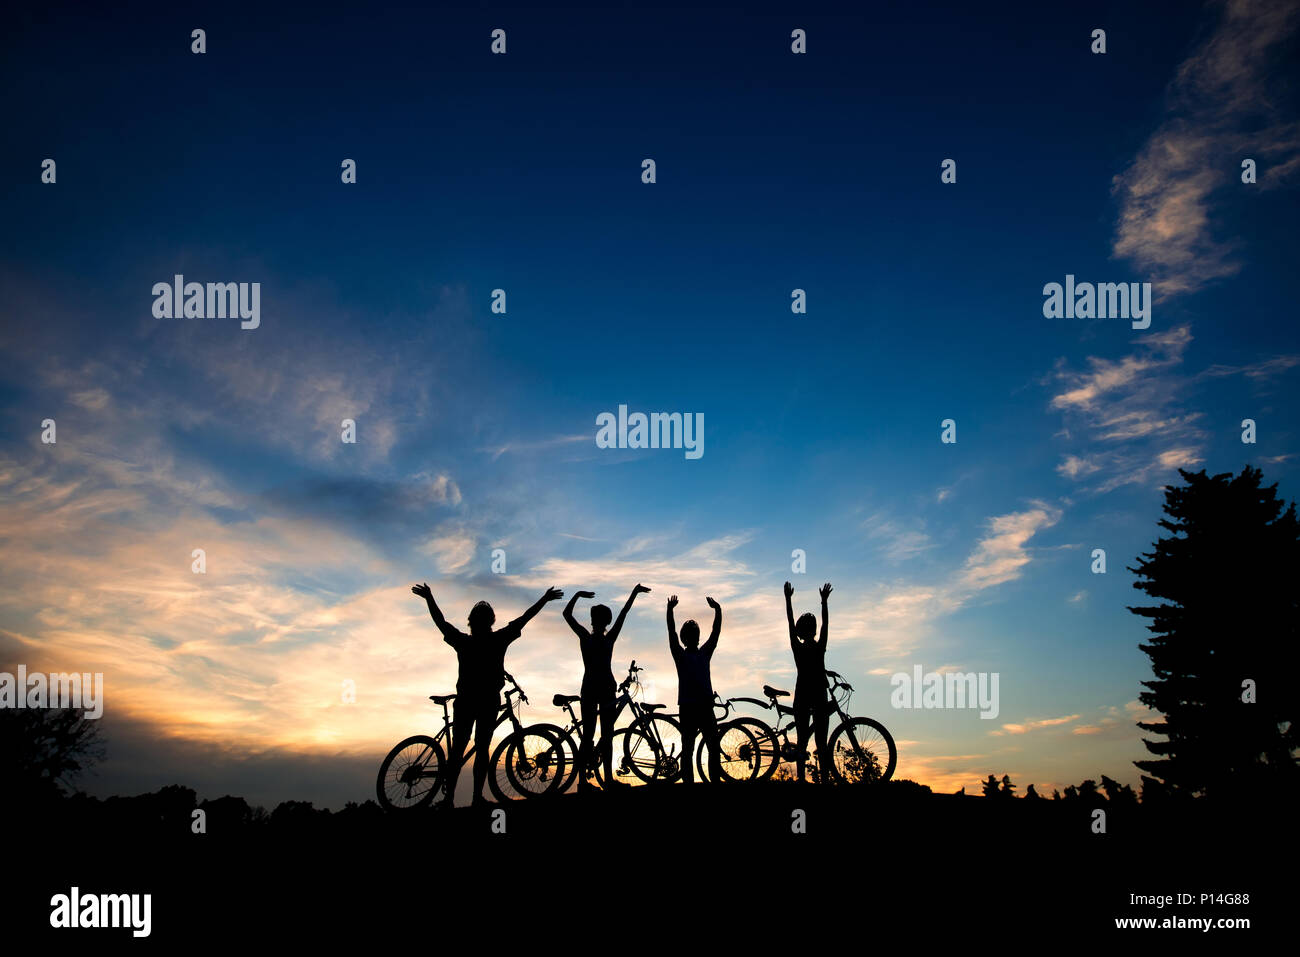 Amigos con bicicletas al atardecer de fondo. Las siluetas de los ciclistas descansando sobre el fondo del cielo nocturno. Noche de verano increíble paisaje. Foto de stock